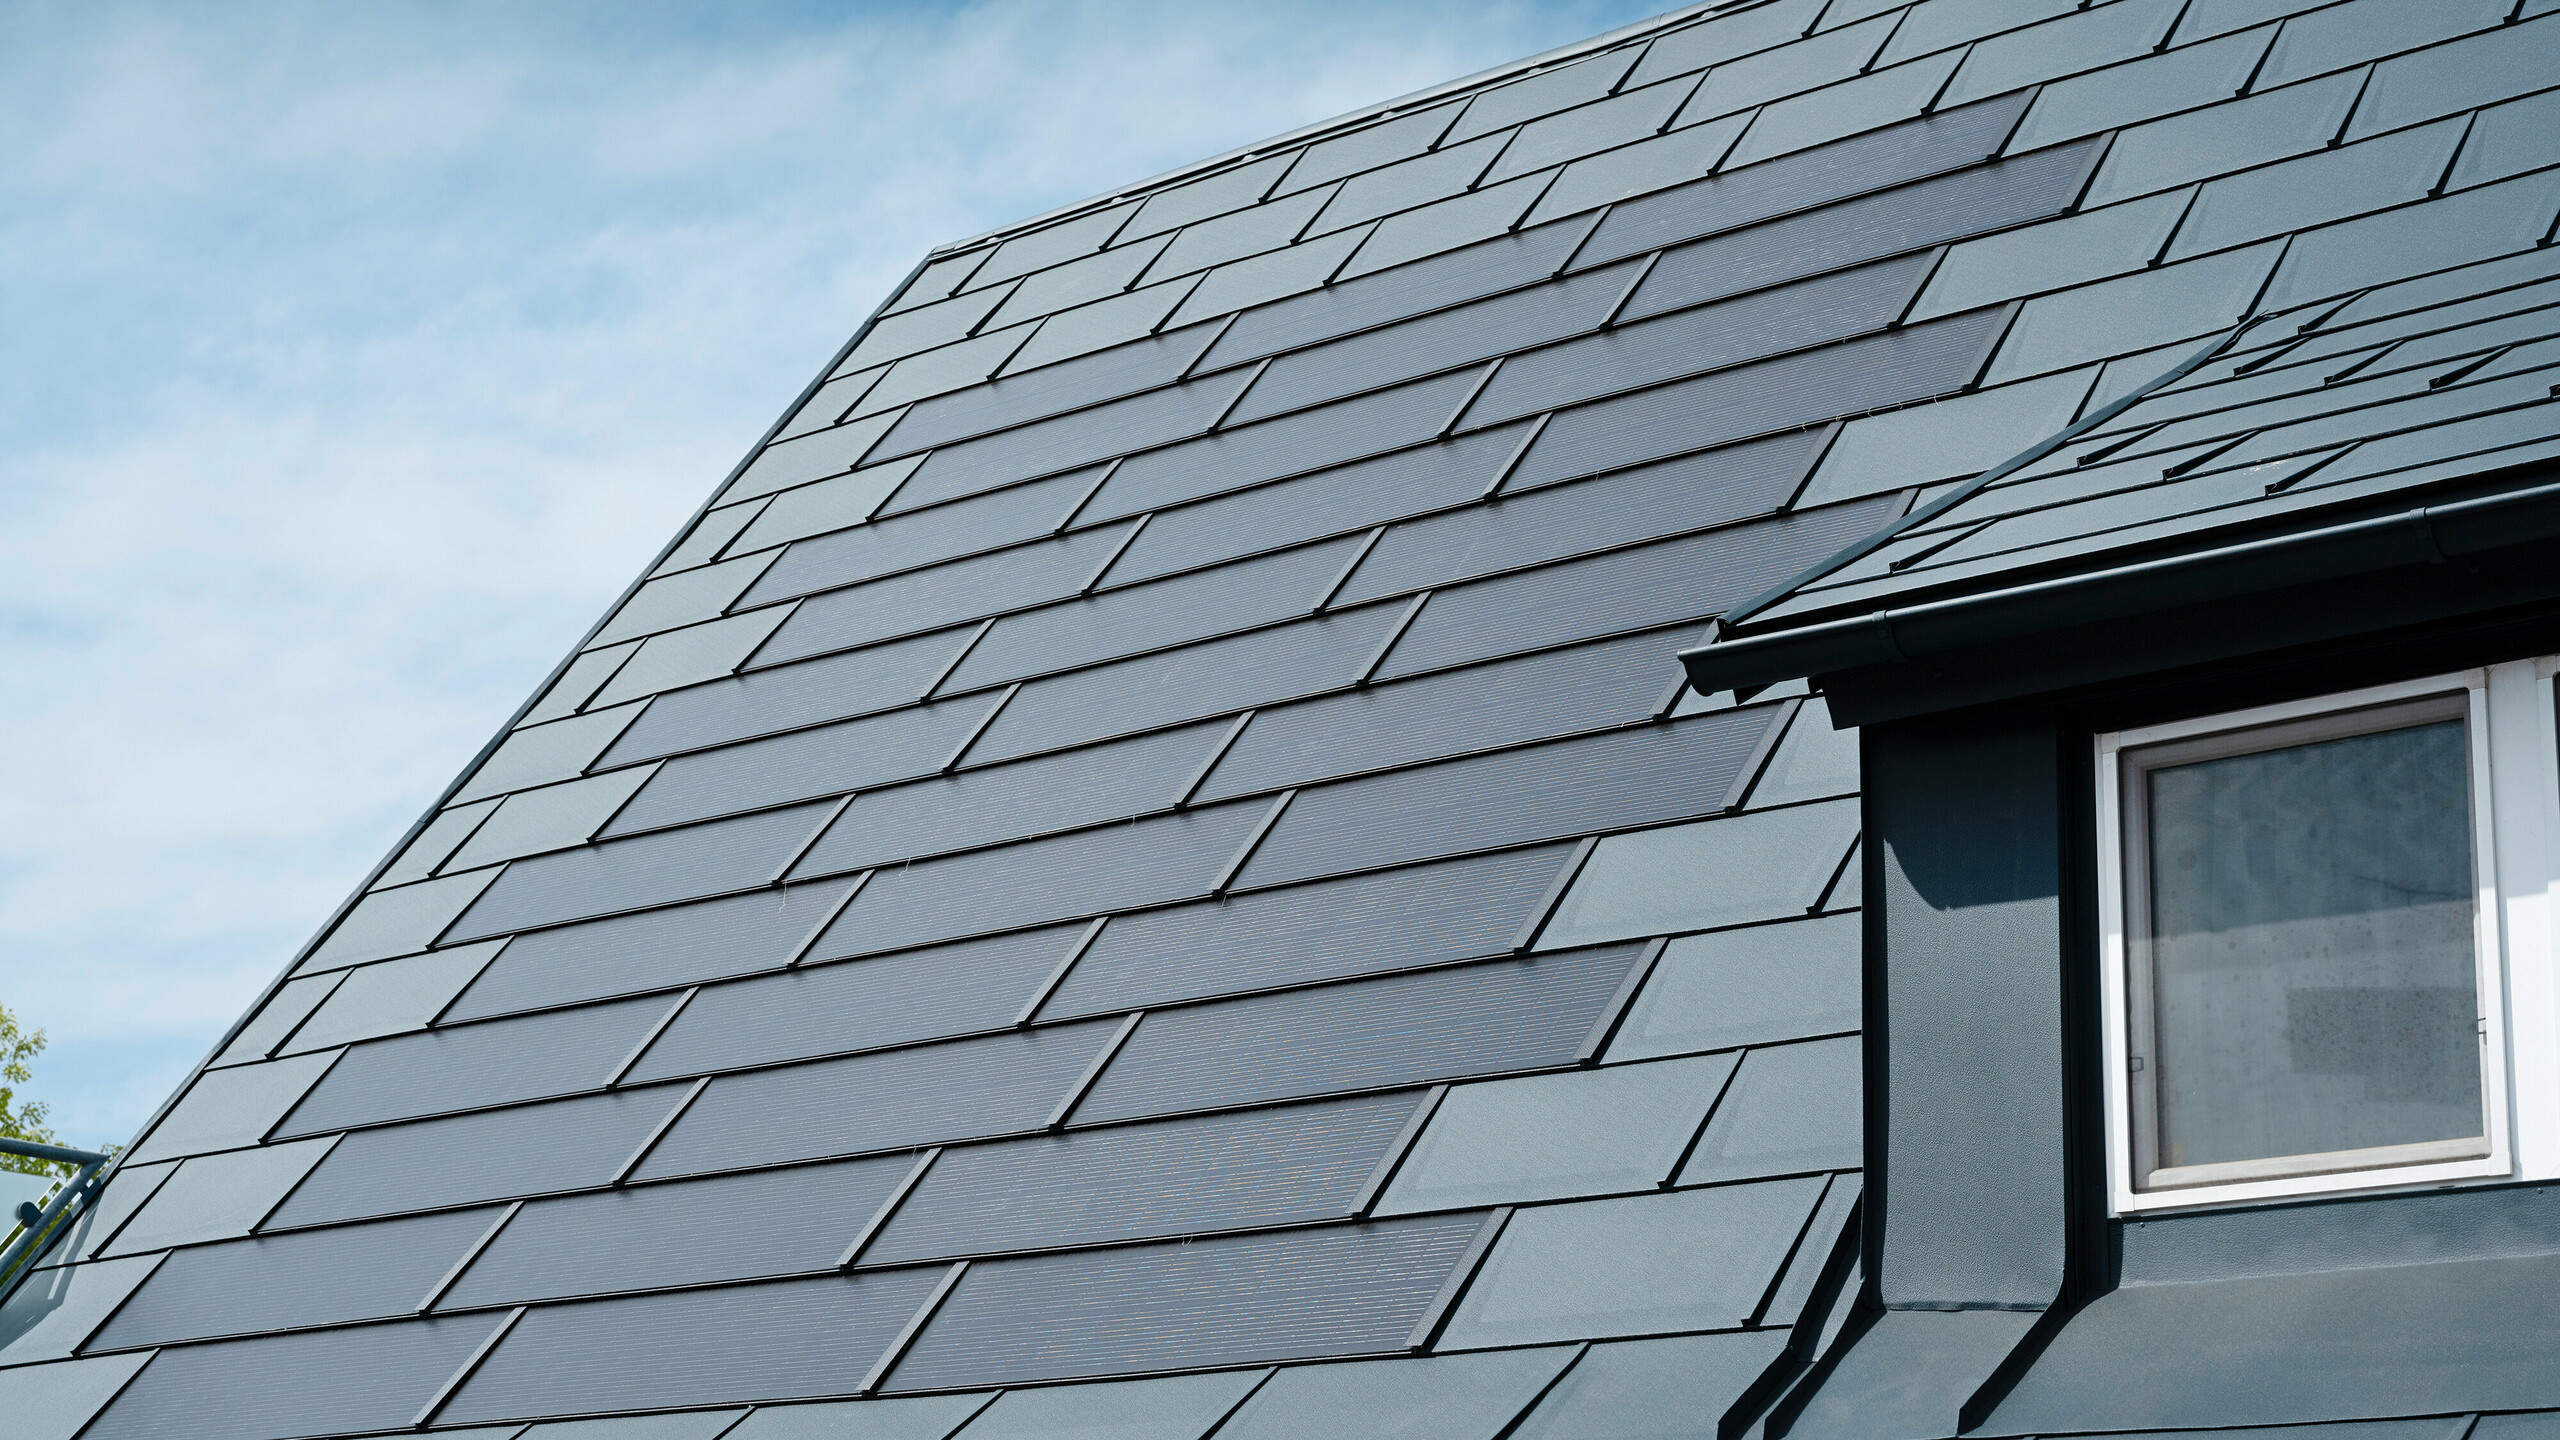 Podroben pogled na prenovljeno streho enodružinske hiše v Leondingu s solarnimi strešnimi ploščami PREFA v antracitni barvi. Od blizu so vidne visokokakovostne aluminijaste plošče PREFA, ki omogočajo brezhibno vgradnjo solarnih modulov. Ta trajna in na vremenske vplive odporna rešitev ponuja trajnosten in energetsko učinkovit način pridobivanja električne energije. Slika ponazarja estetsko in funkcionalno kakovost uporabljenih materialov. Na desni strani slike je pod mansardnim oknom vidno belo okno.